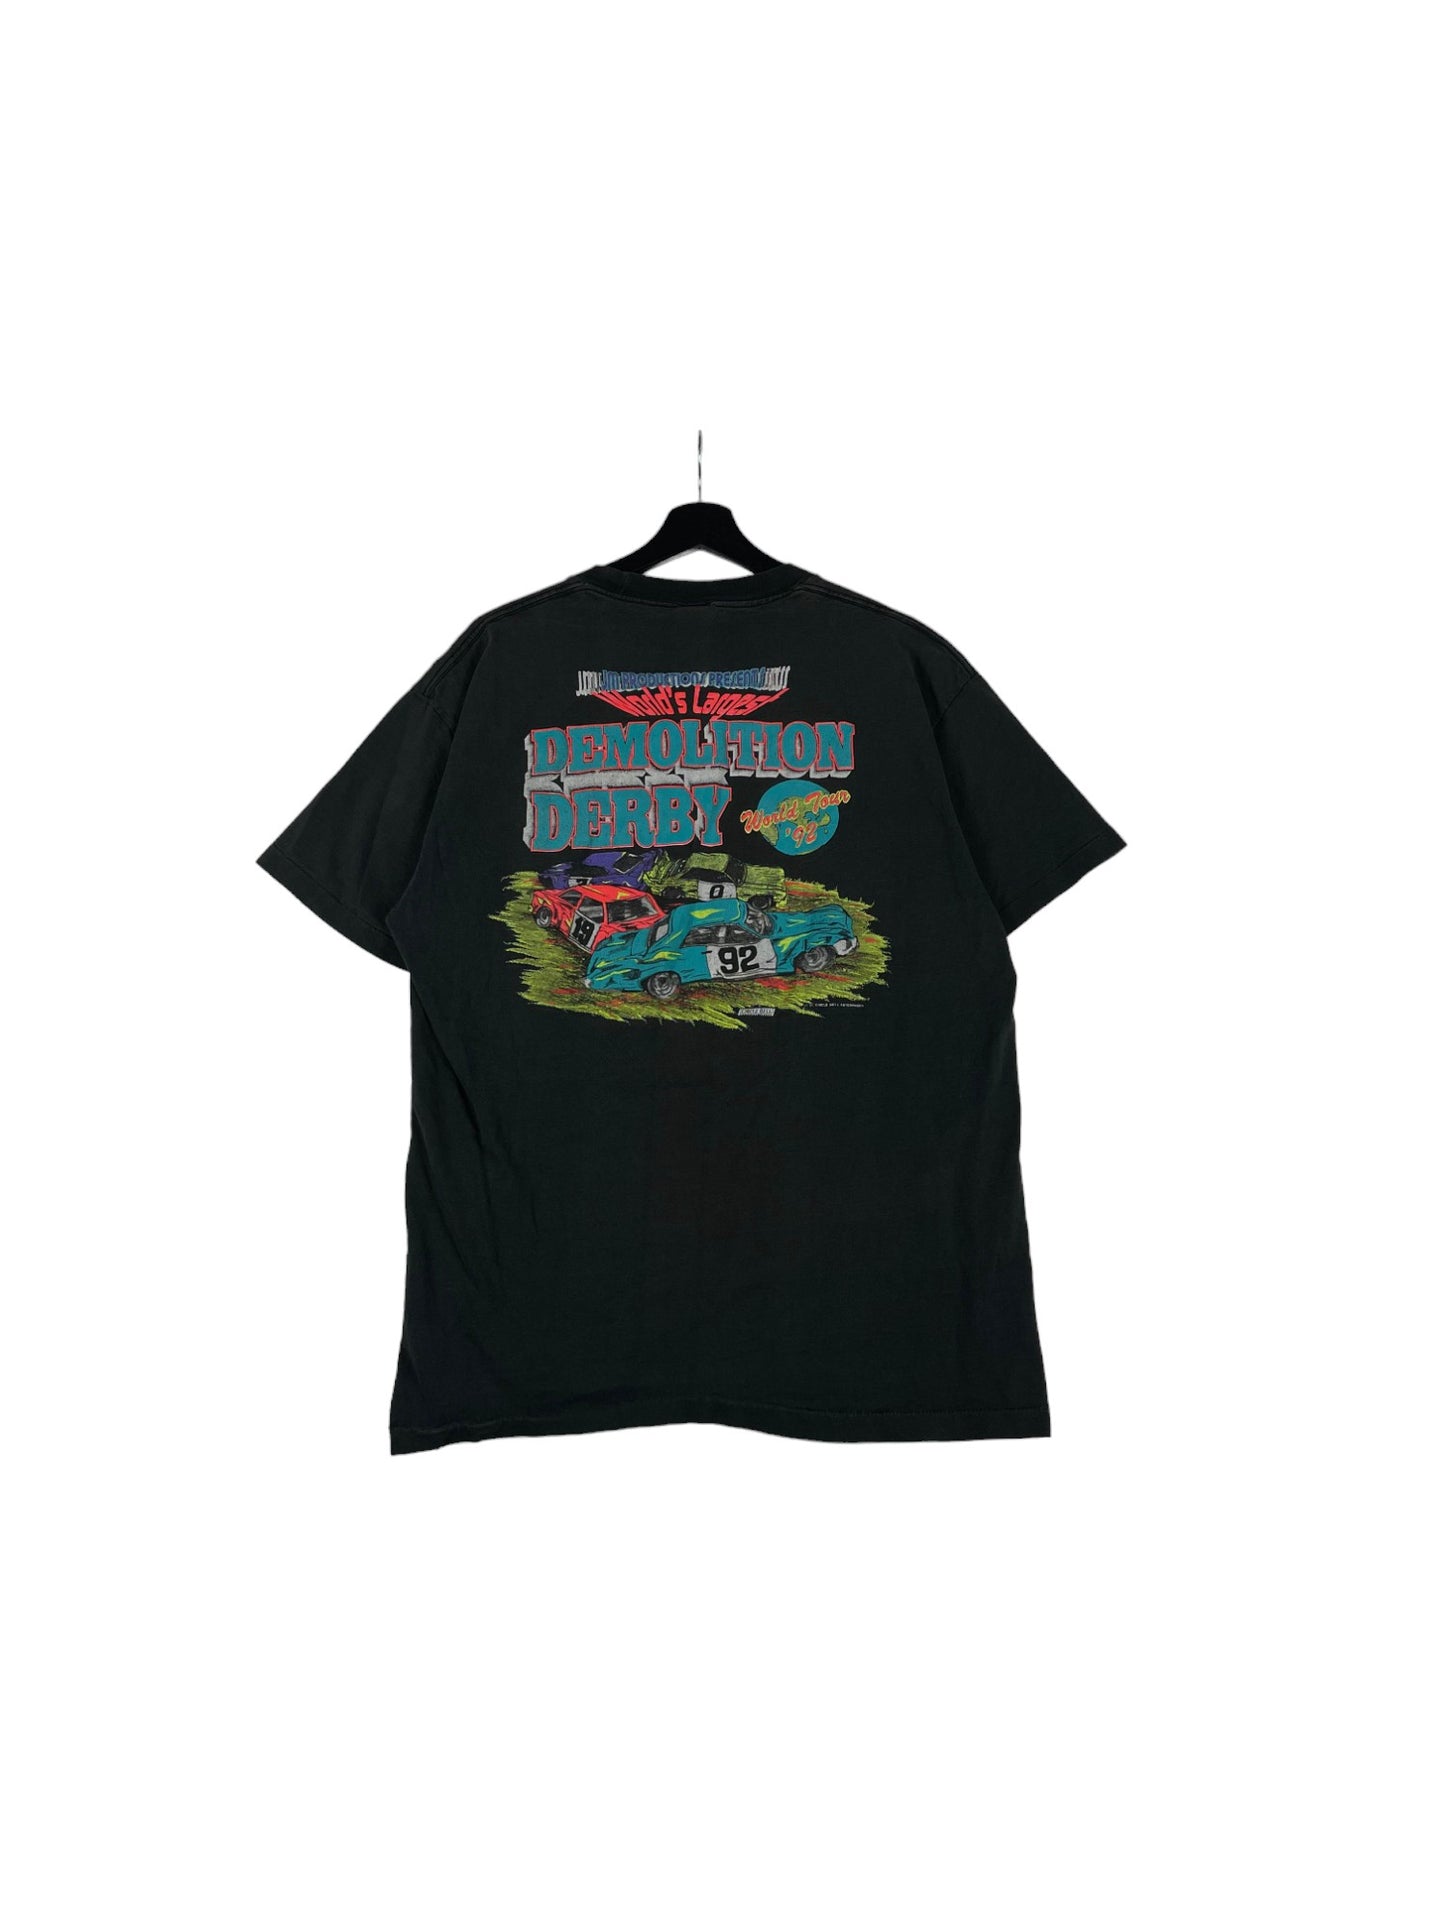 Demolition Derby T-Shirt 1992